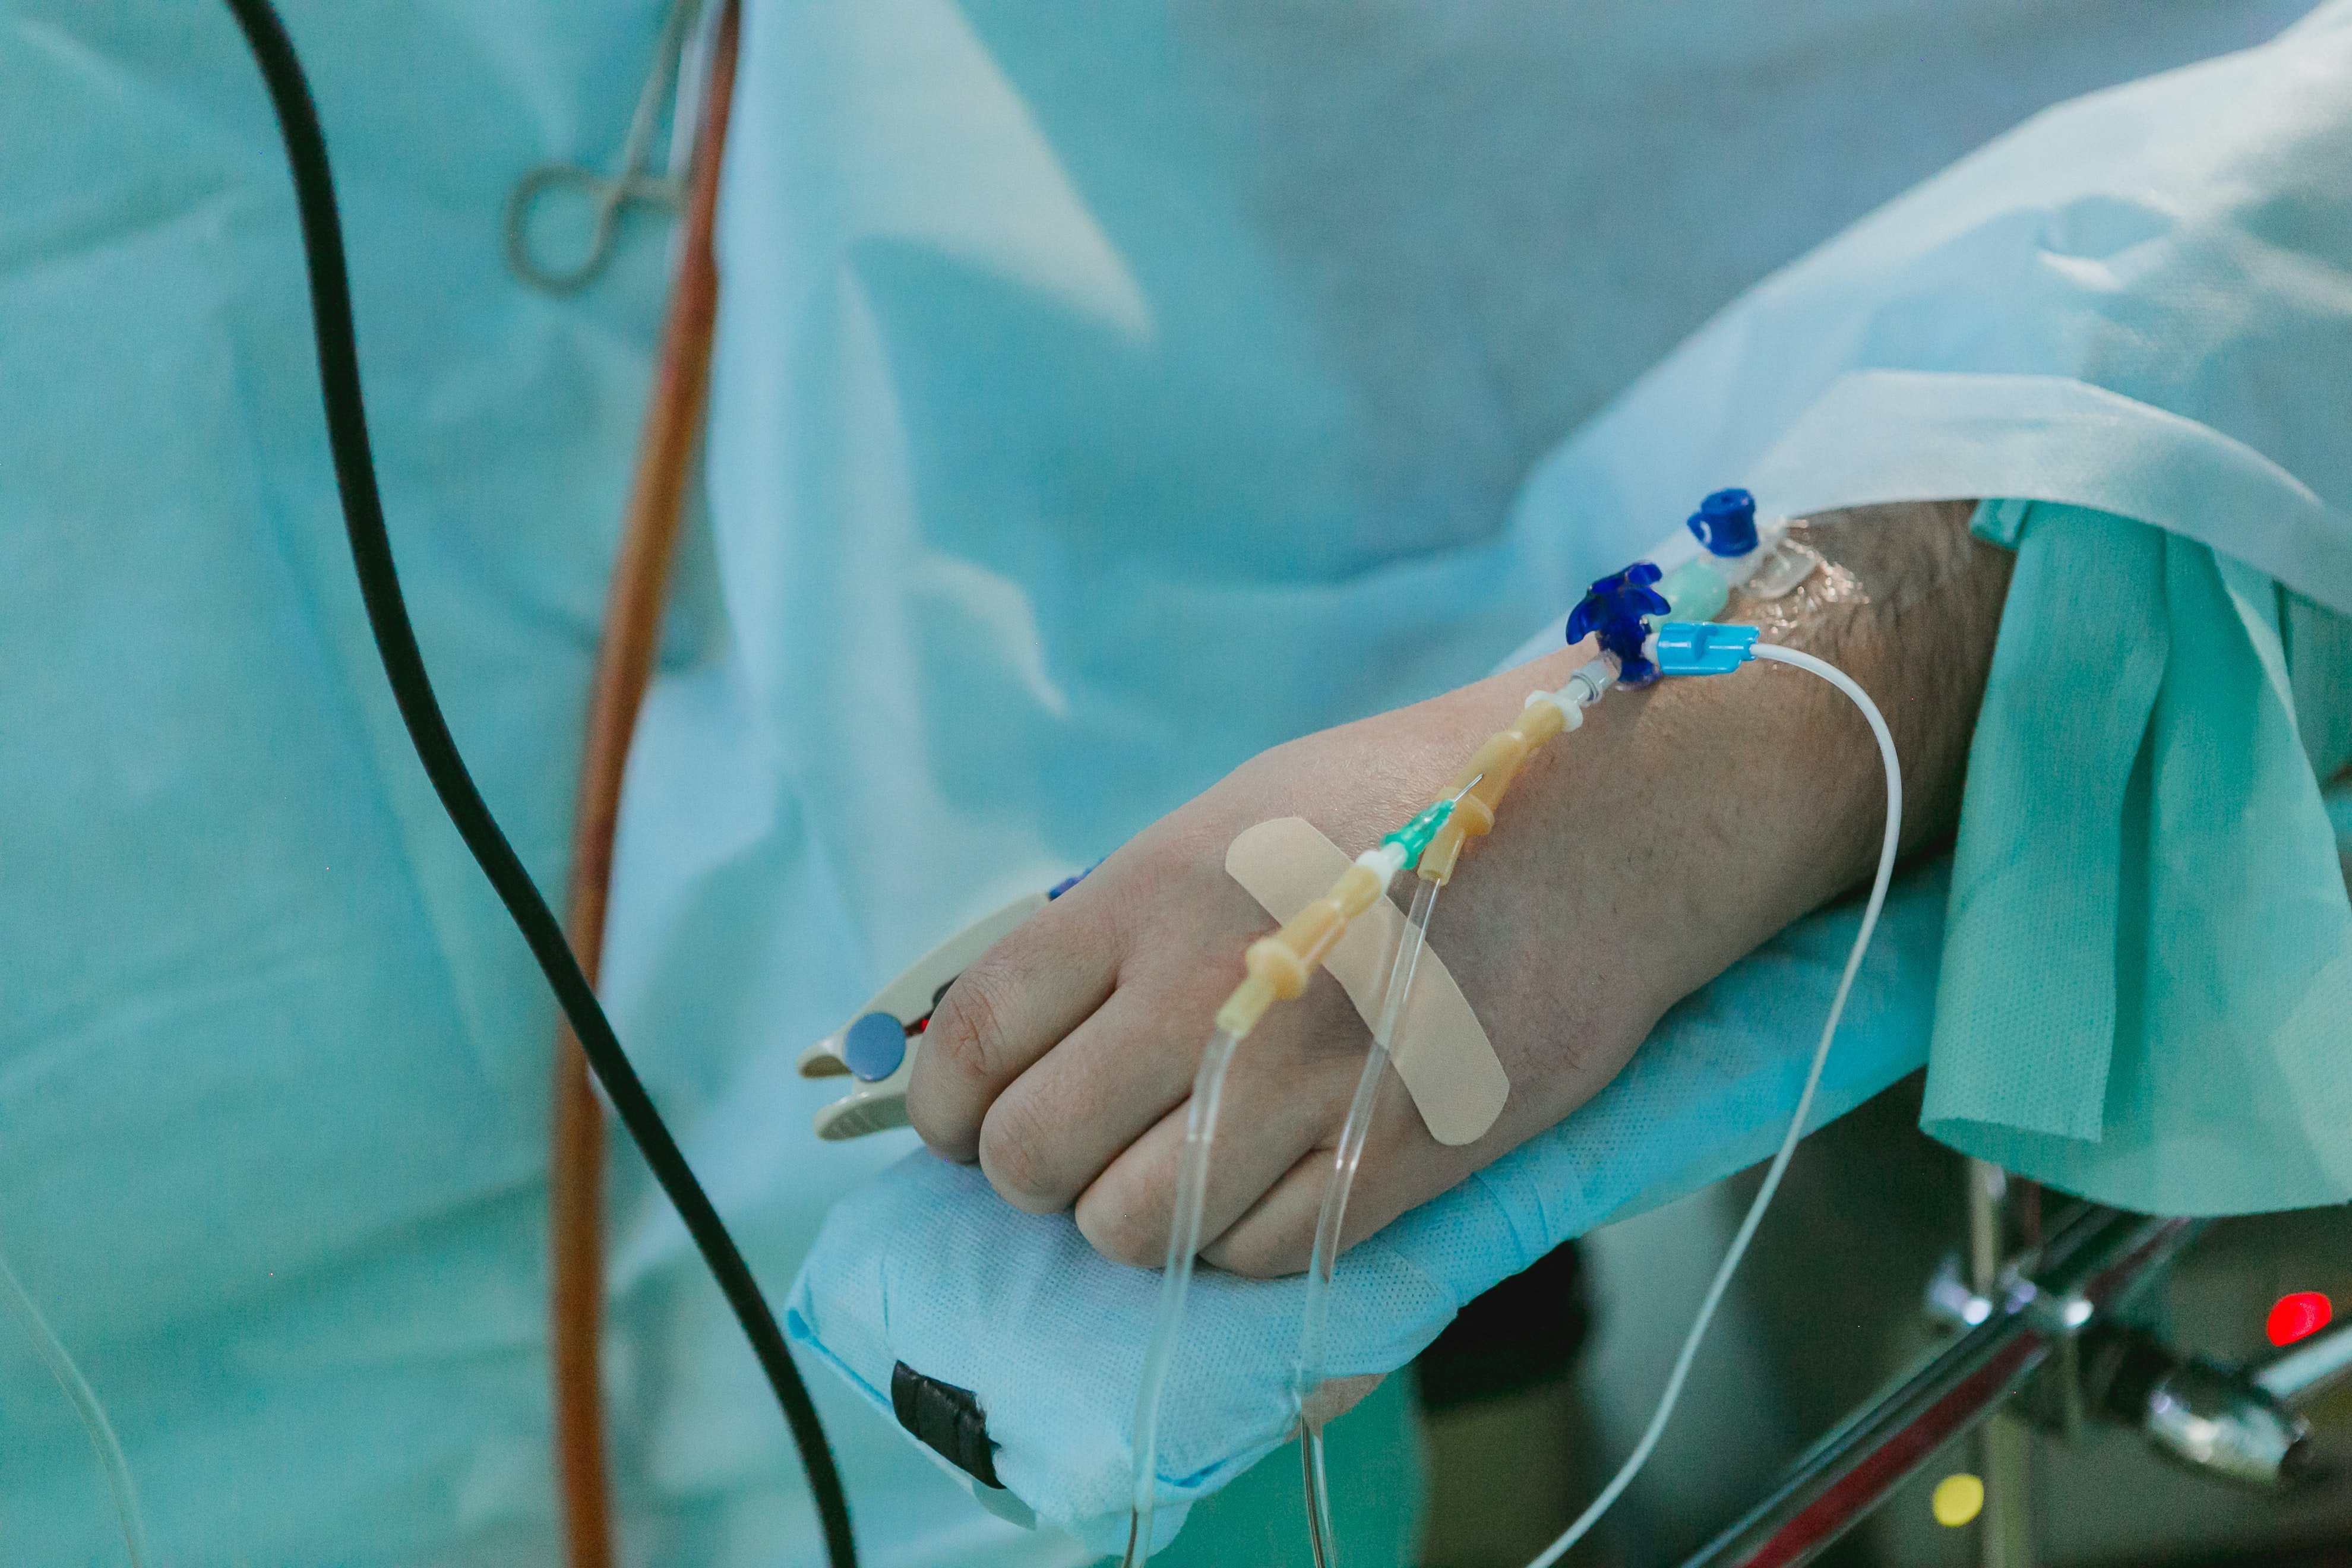 Una persona inconsciente acostada en una cama de hospital. | Foto: Unsplash